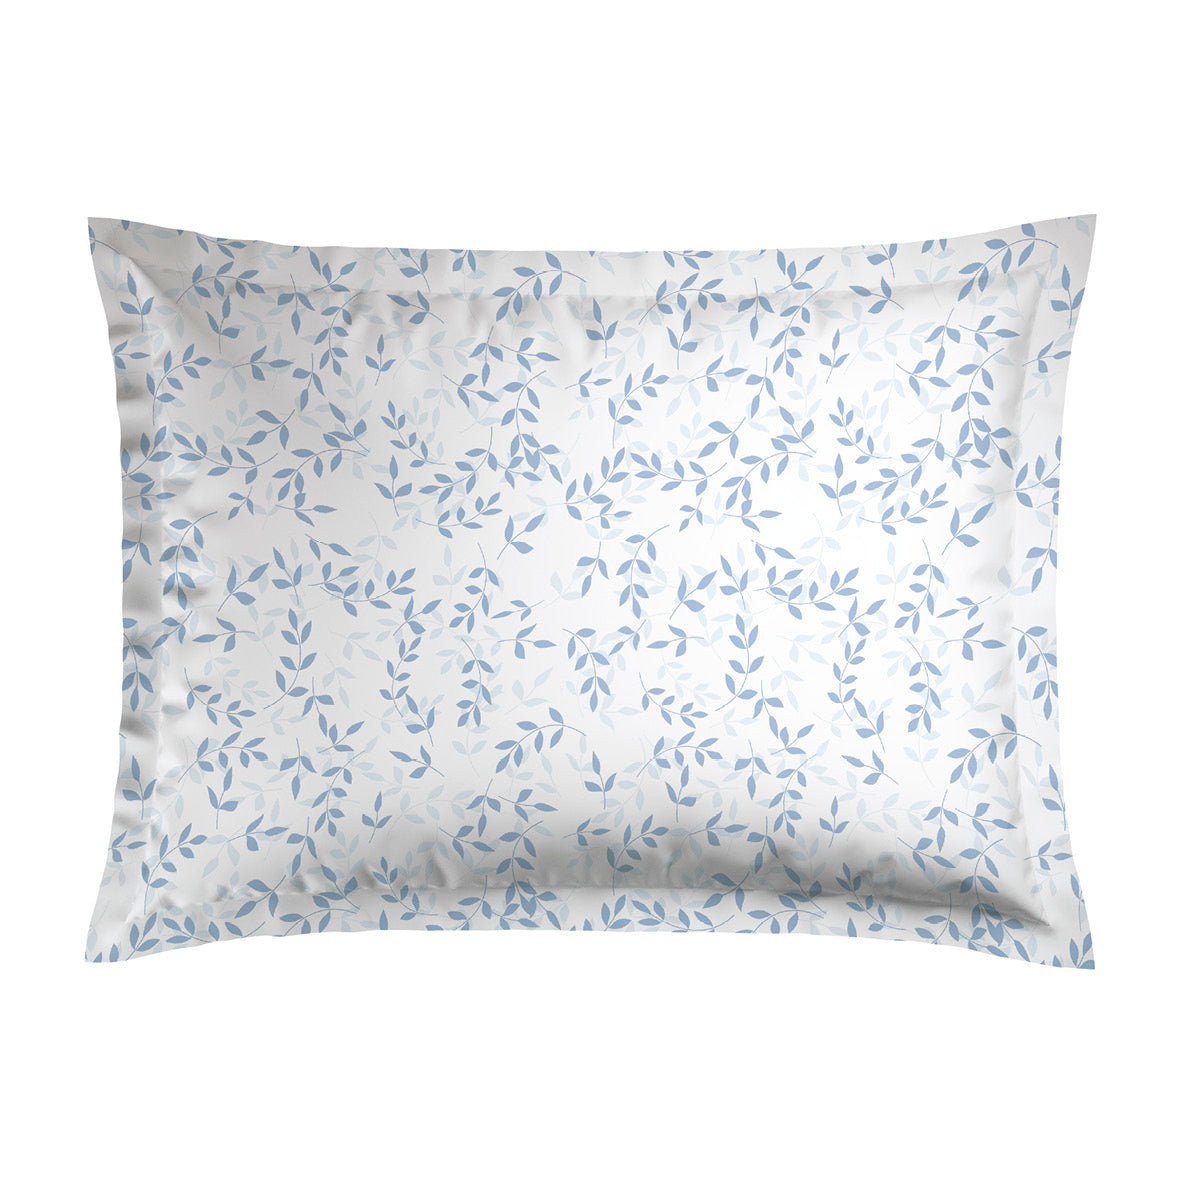 Set of 2 pillowcases cotton satin - Freya white 50 x 70 cm